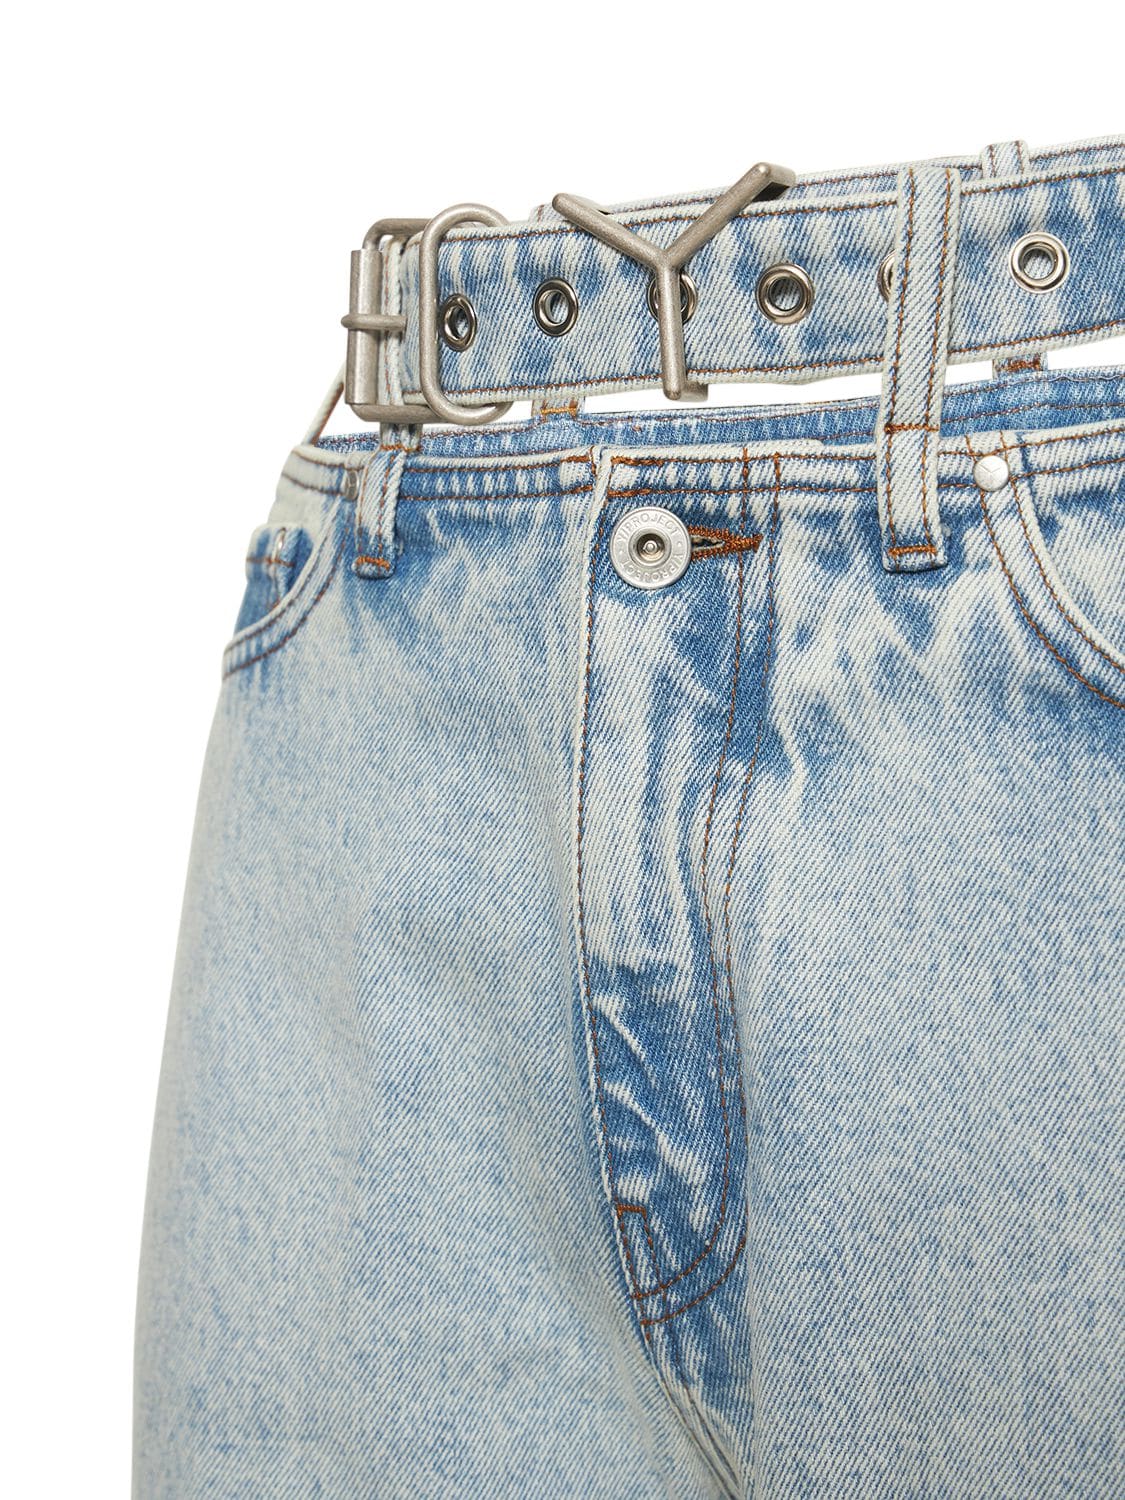 Shop Y/project Y Belt Denim Wide Leg Jeans